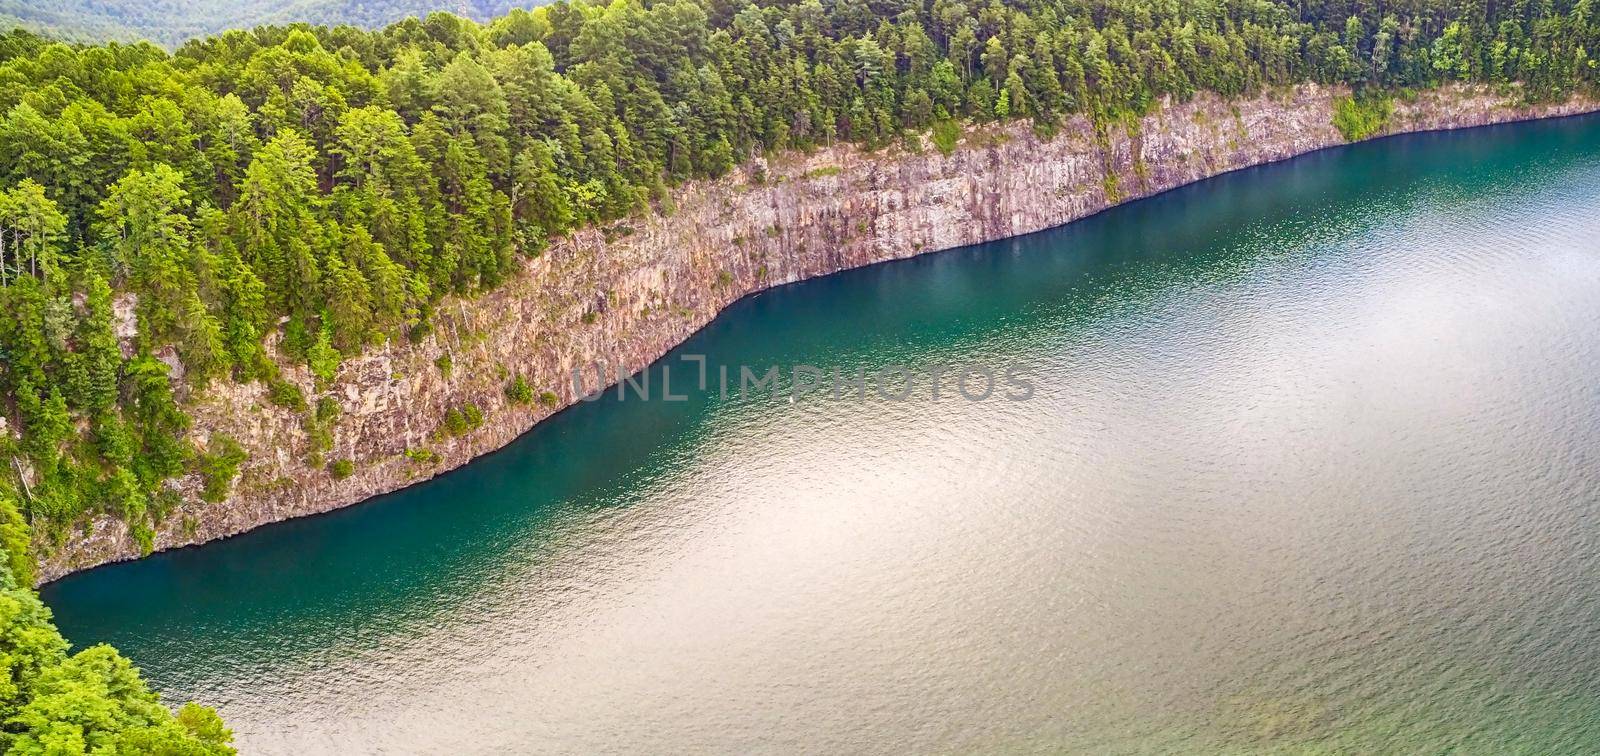 beautiful scenic views at lake jocassee south carolina by digidreamgrafix